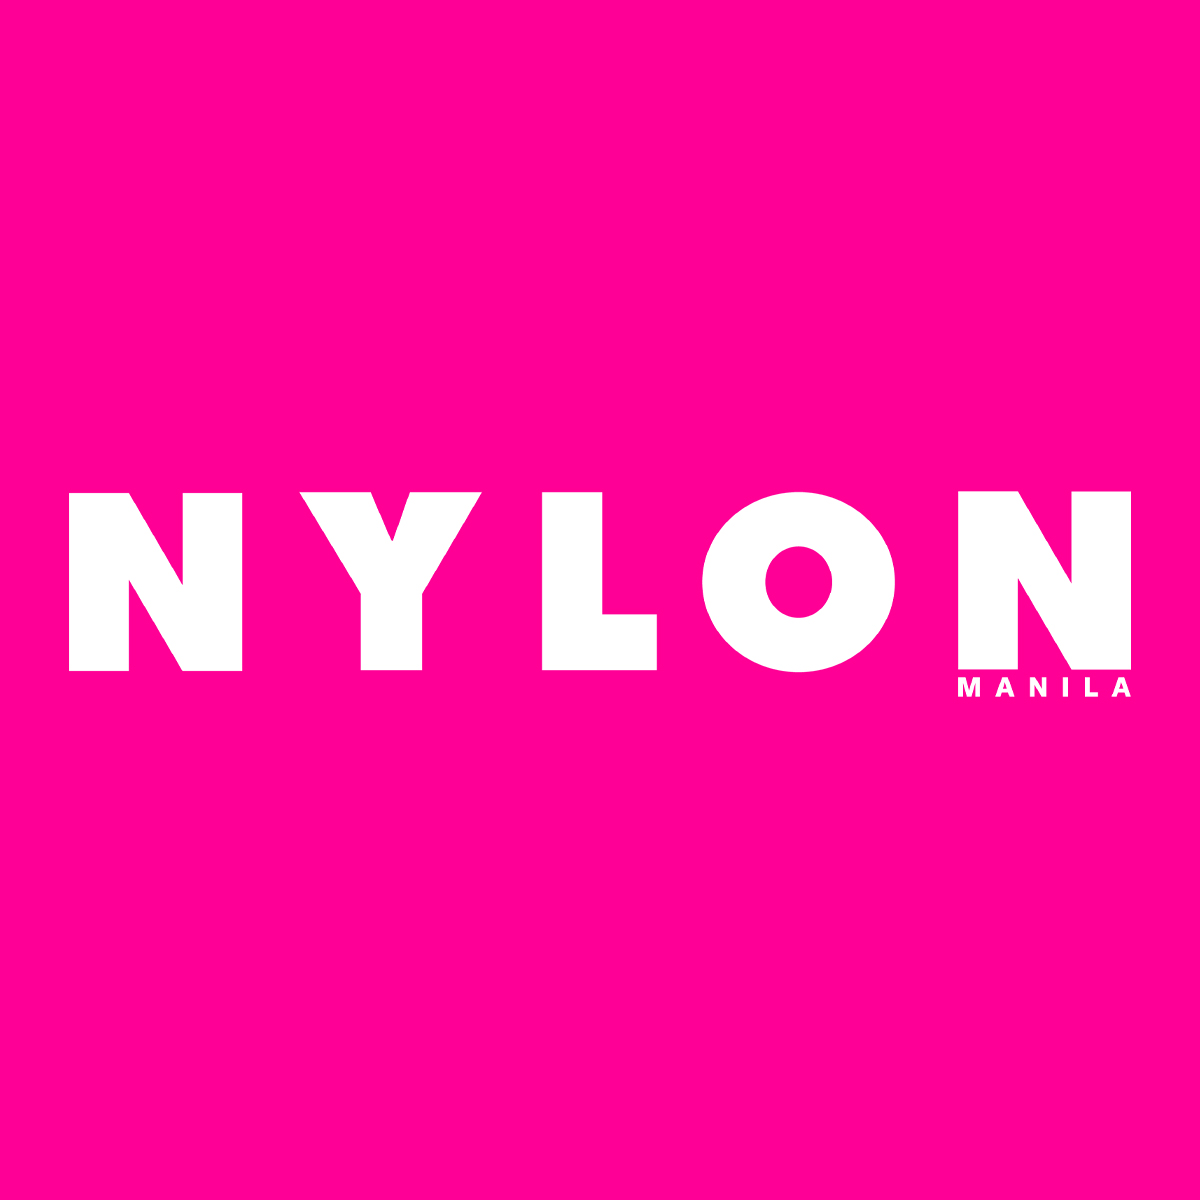 nylon manila logo pink